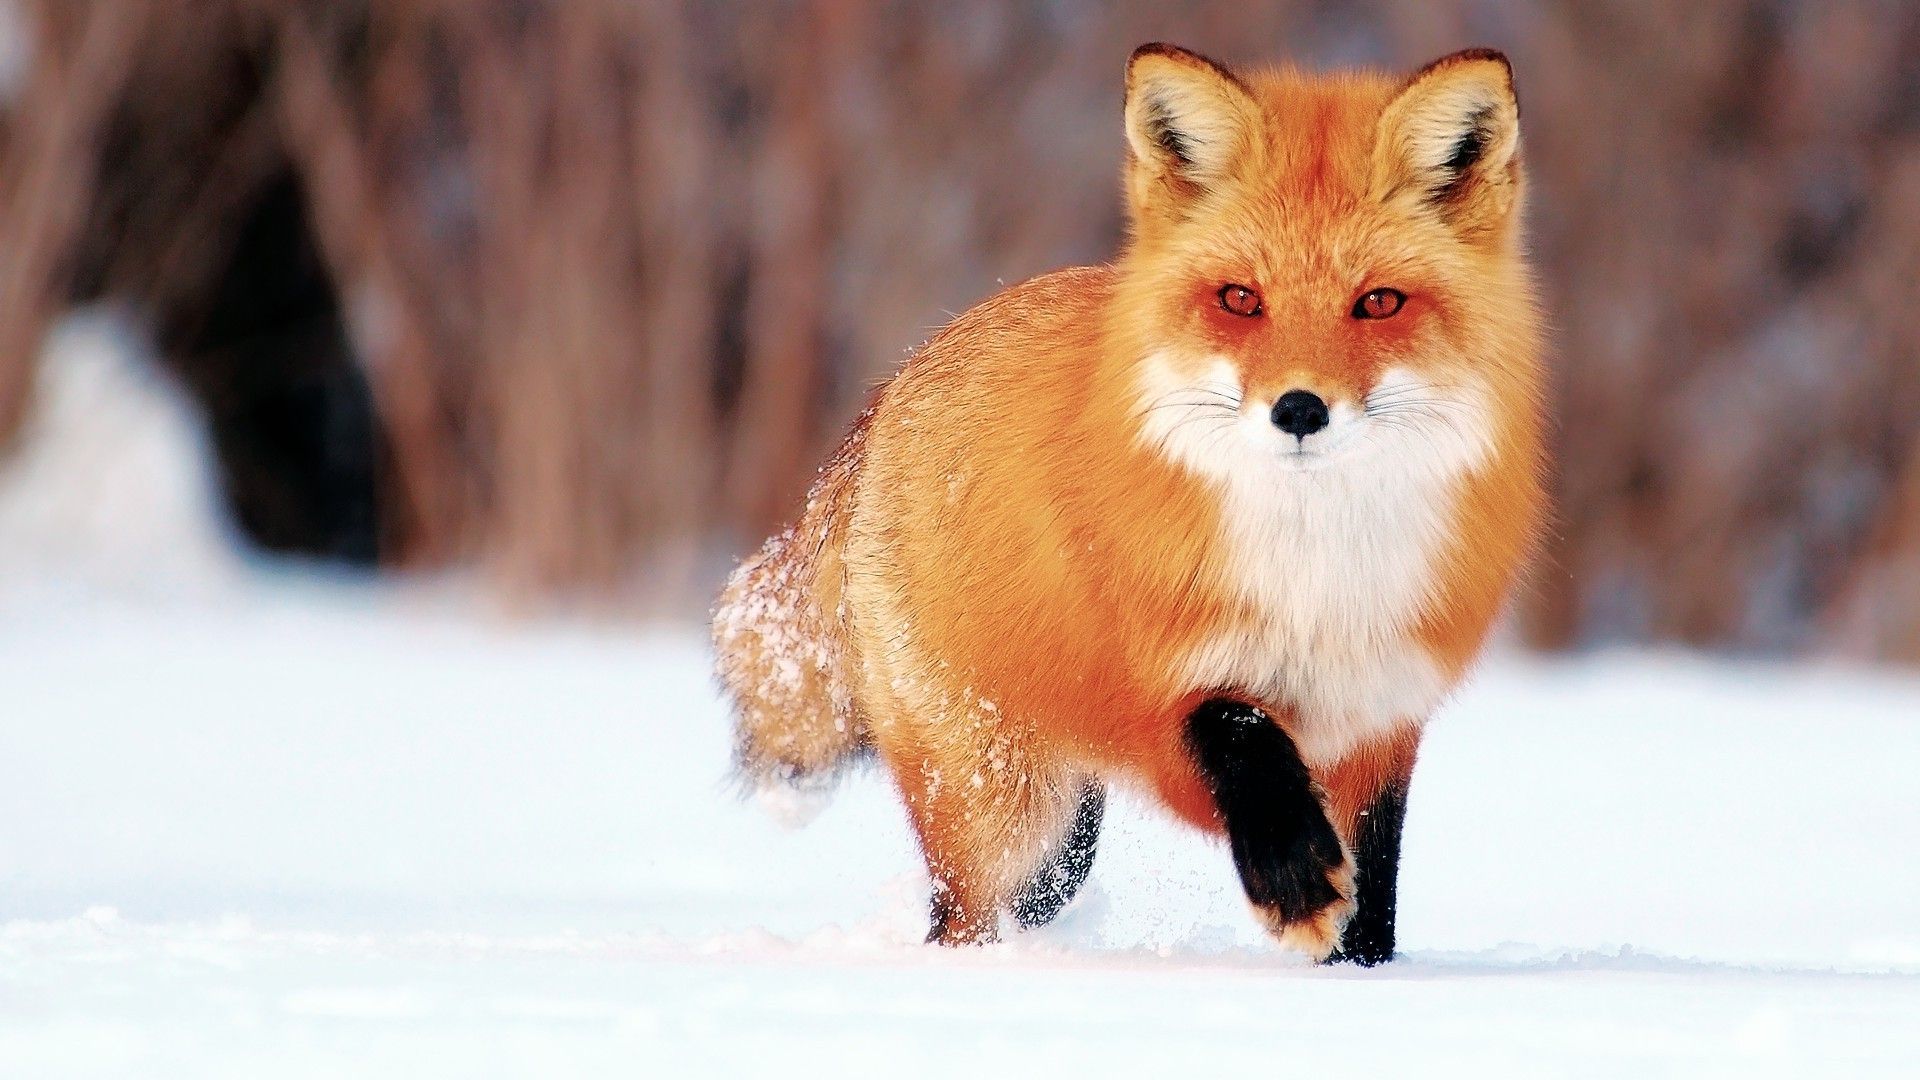 The Fox In Winter